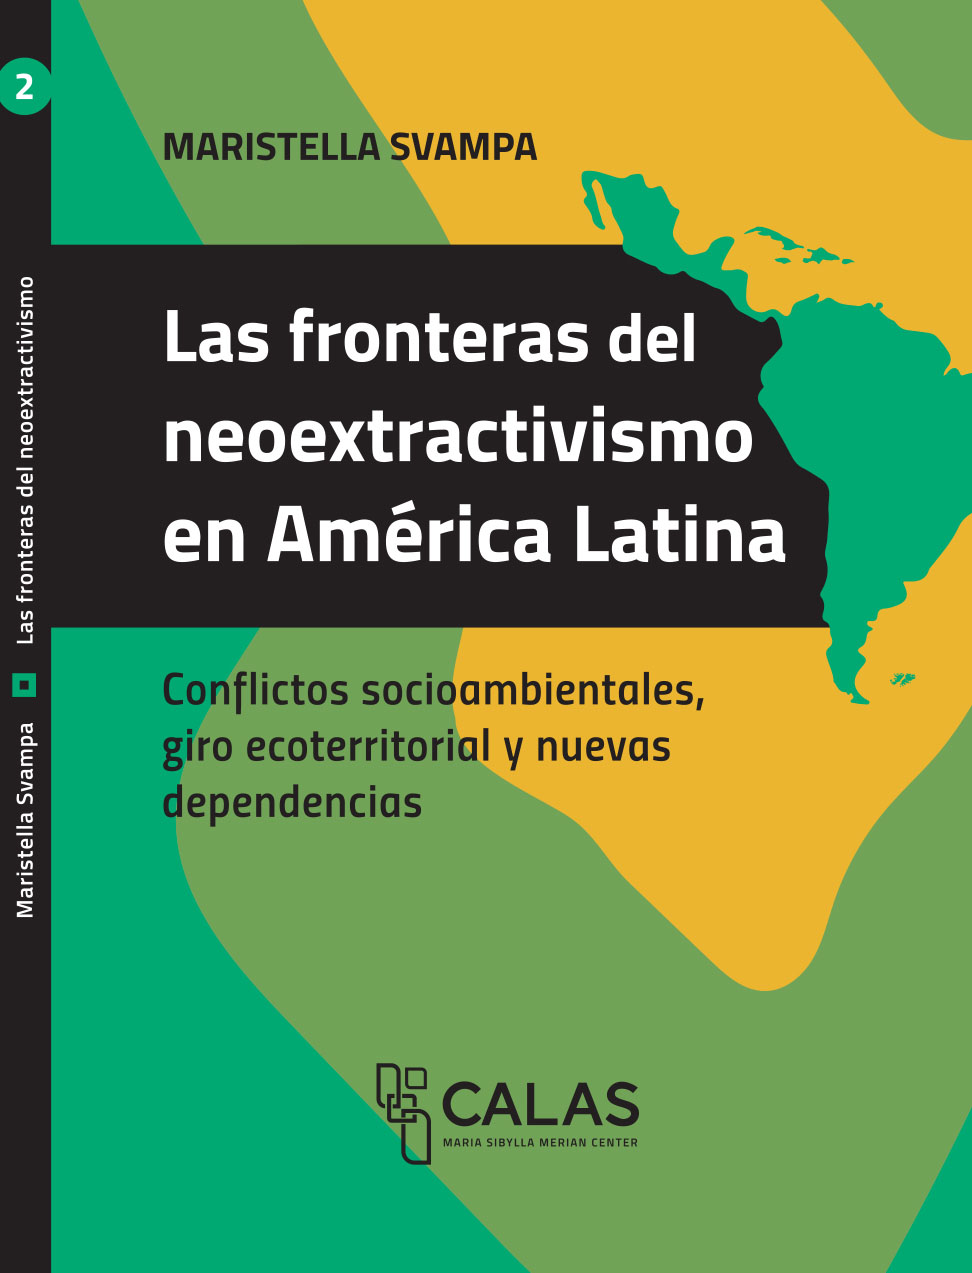 Las fronteras del neoextractivismo en América Latina: conflictos socioambientales, giro ecoterritorial y nuevas dependencias